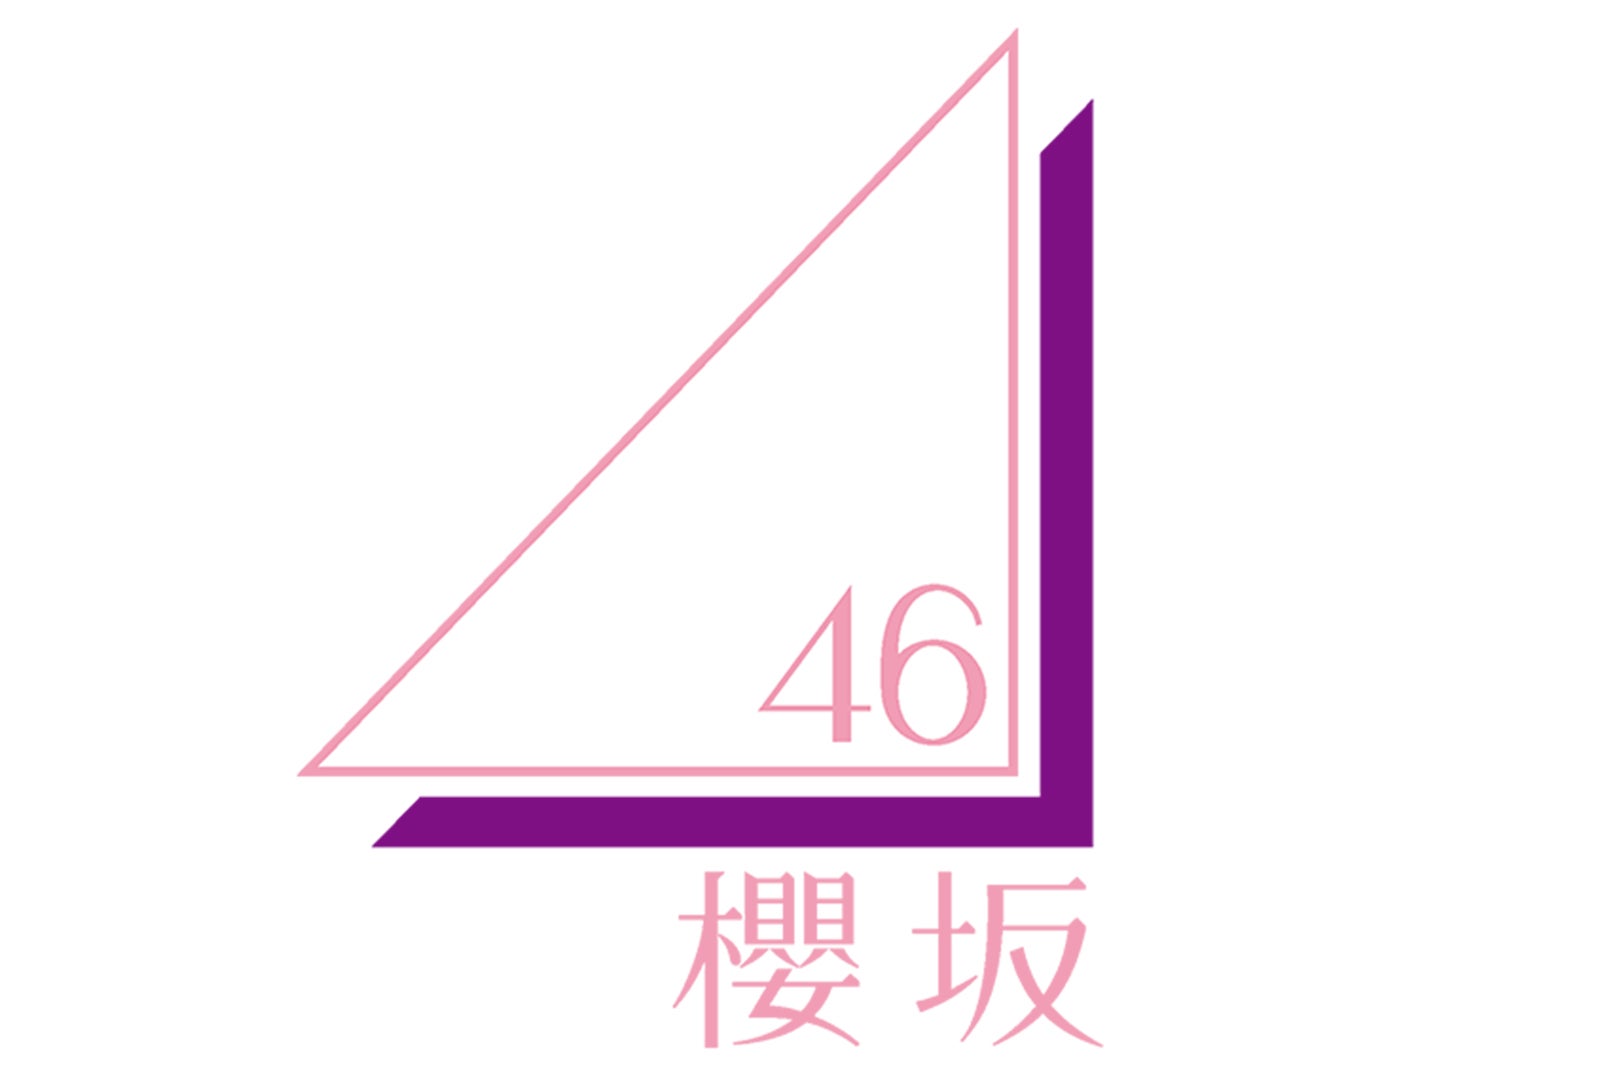 欅坂46新グループ名 櫻坂46 ロゴ解禁 キャプテン菅井友香コメント到着 モデルプレス